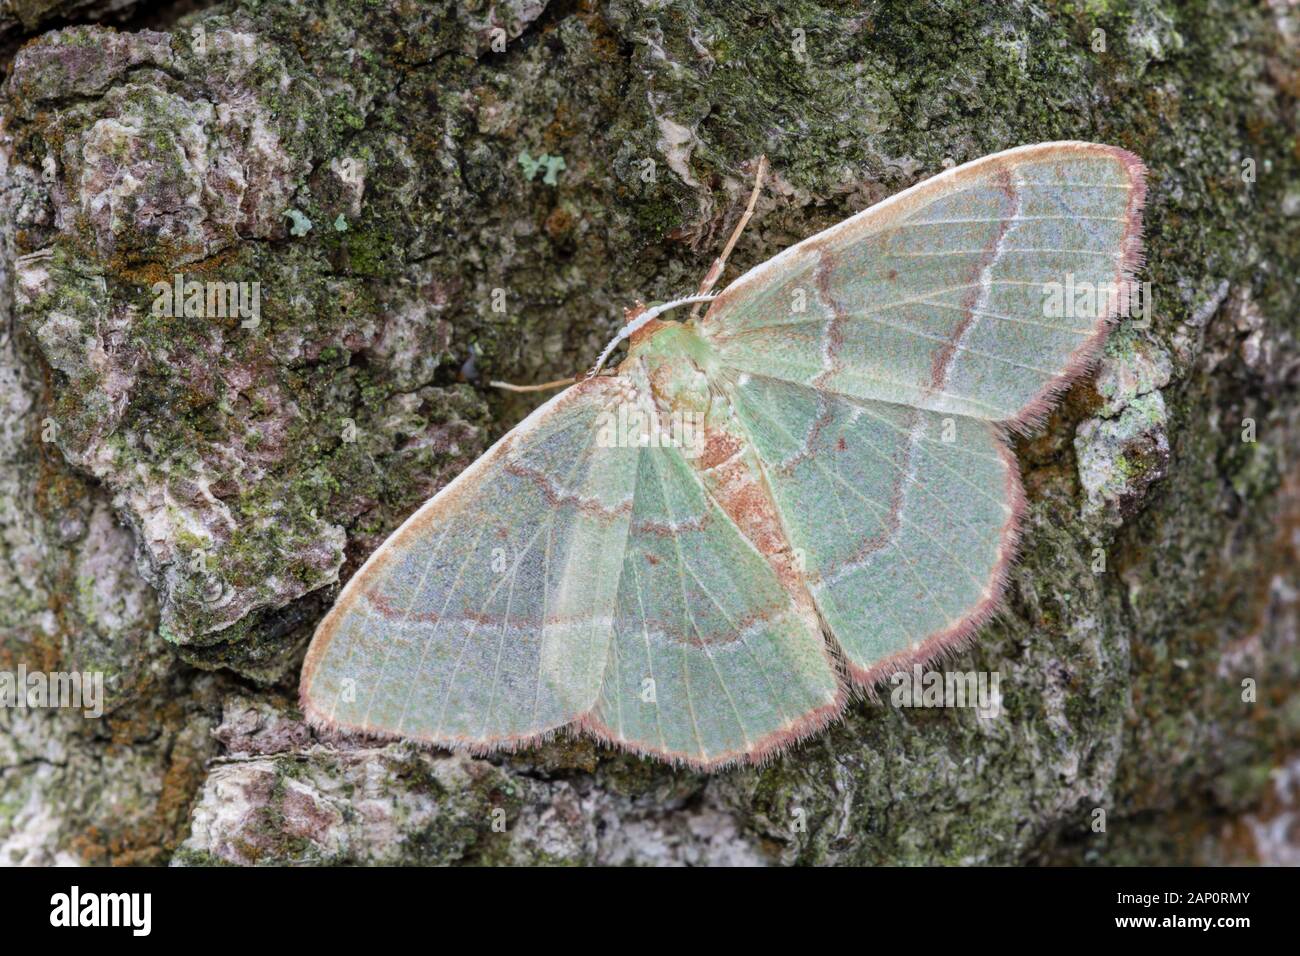 Red-frange Smeraldo (Nemoria bistriaria) Moth in appoggio con ali stese sulla quercia di castagno. Weiser la foresta di stato, Pennsylvania, Giugno. Foto Stock